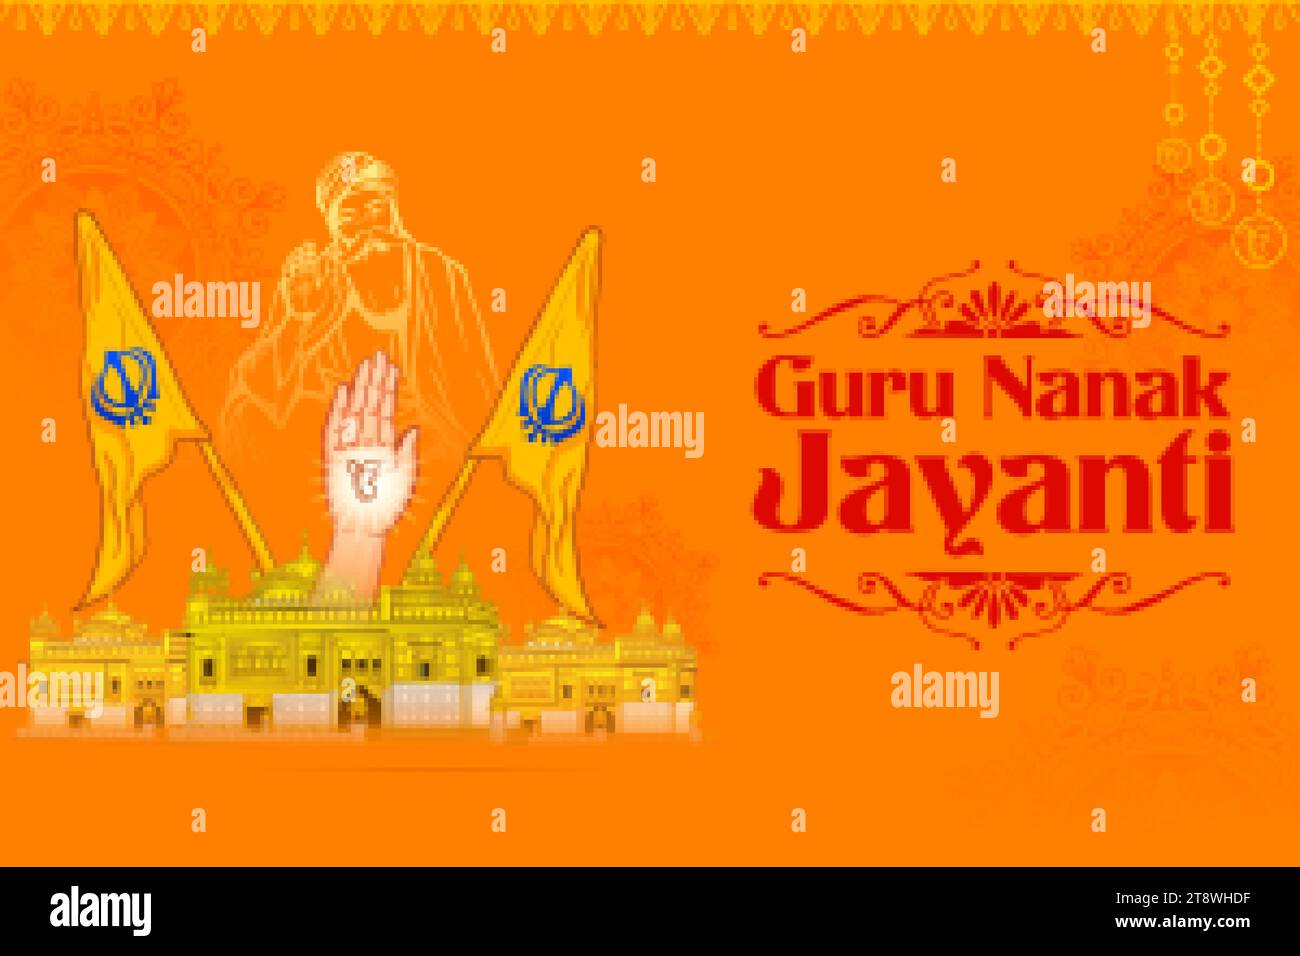 illustration of Happy Gurpurab, Guru Nanak Jayanti festival of Sikh celebration background Stock Vector